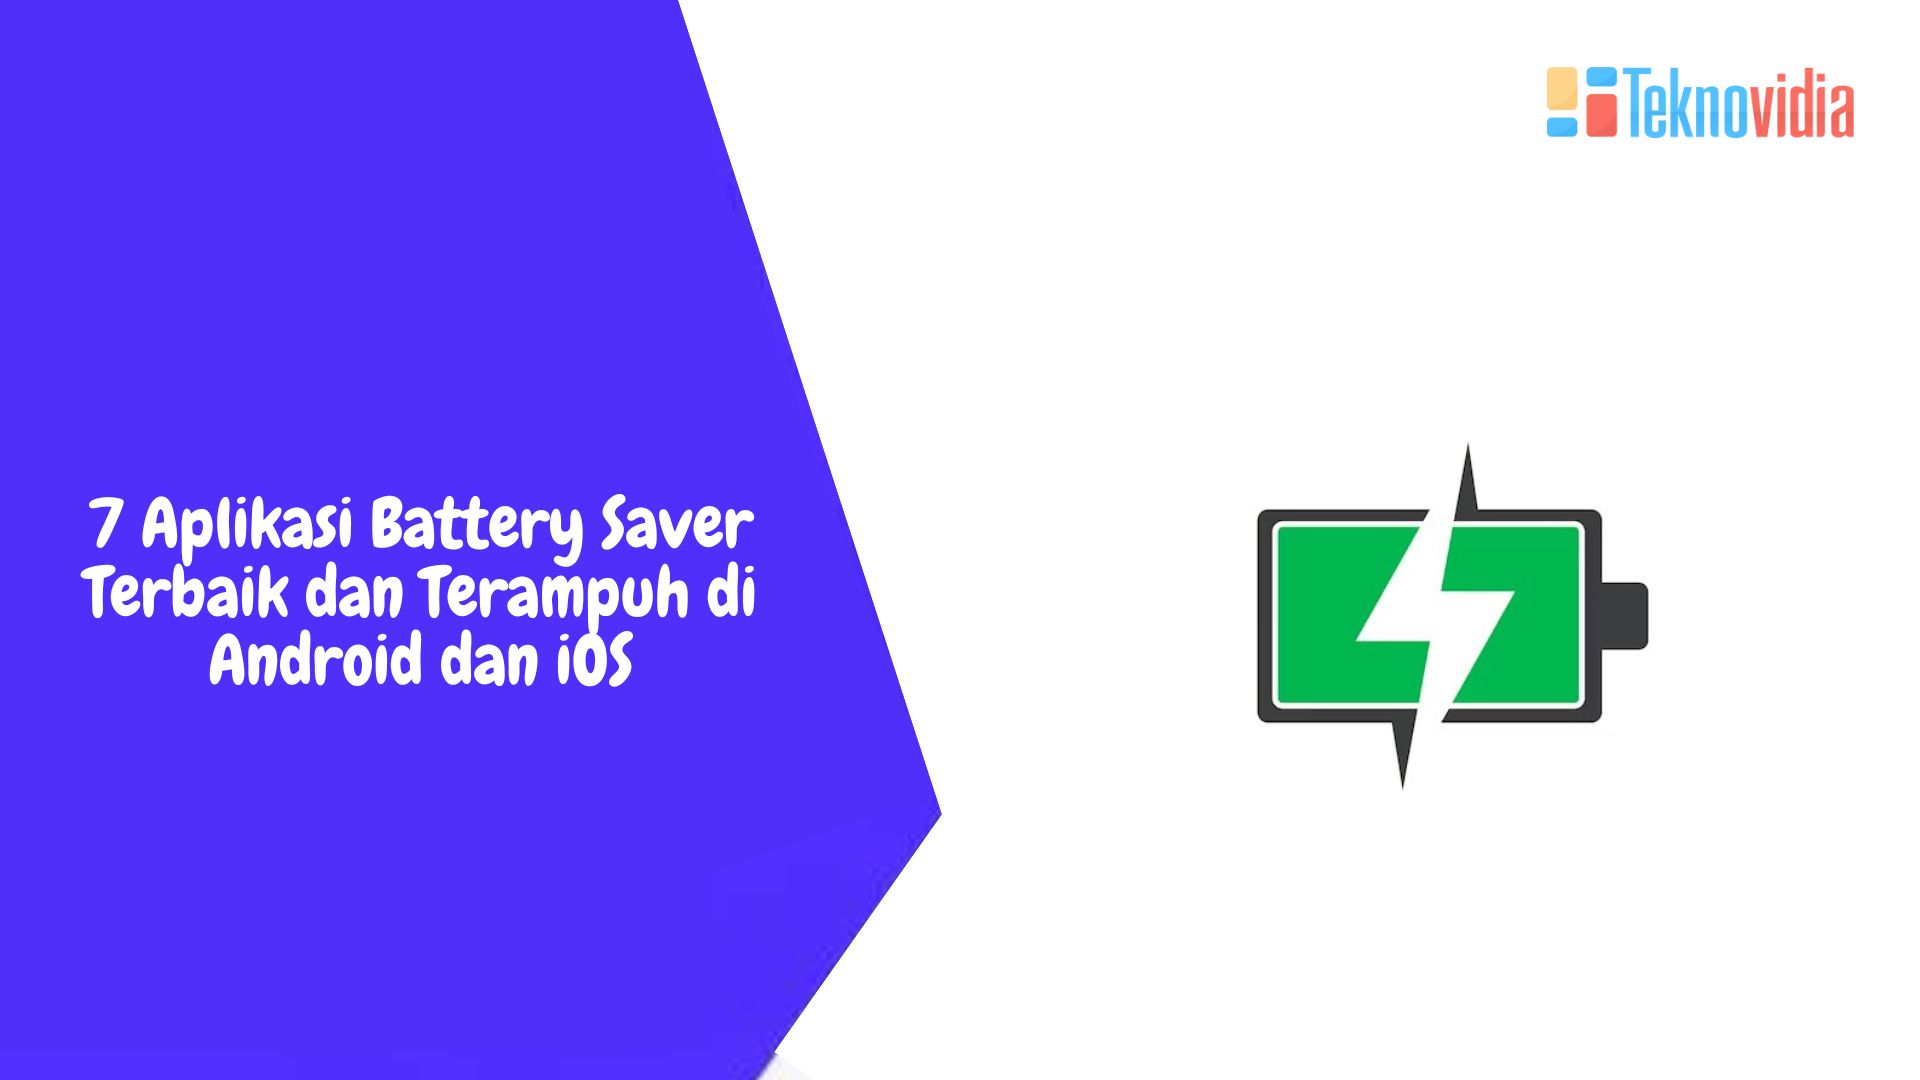 7 Aplikasi Battery Saver Terbaik dan Terampuh di Android dan iOS